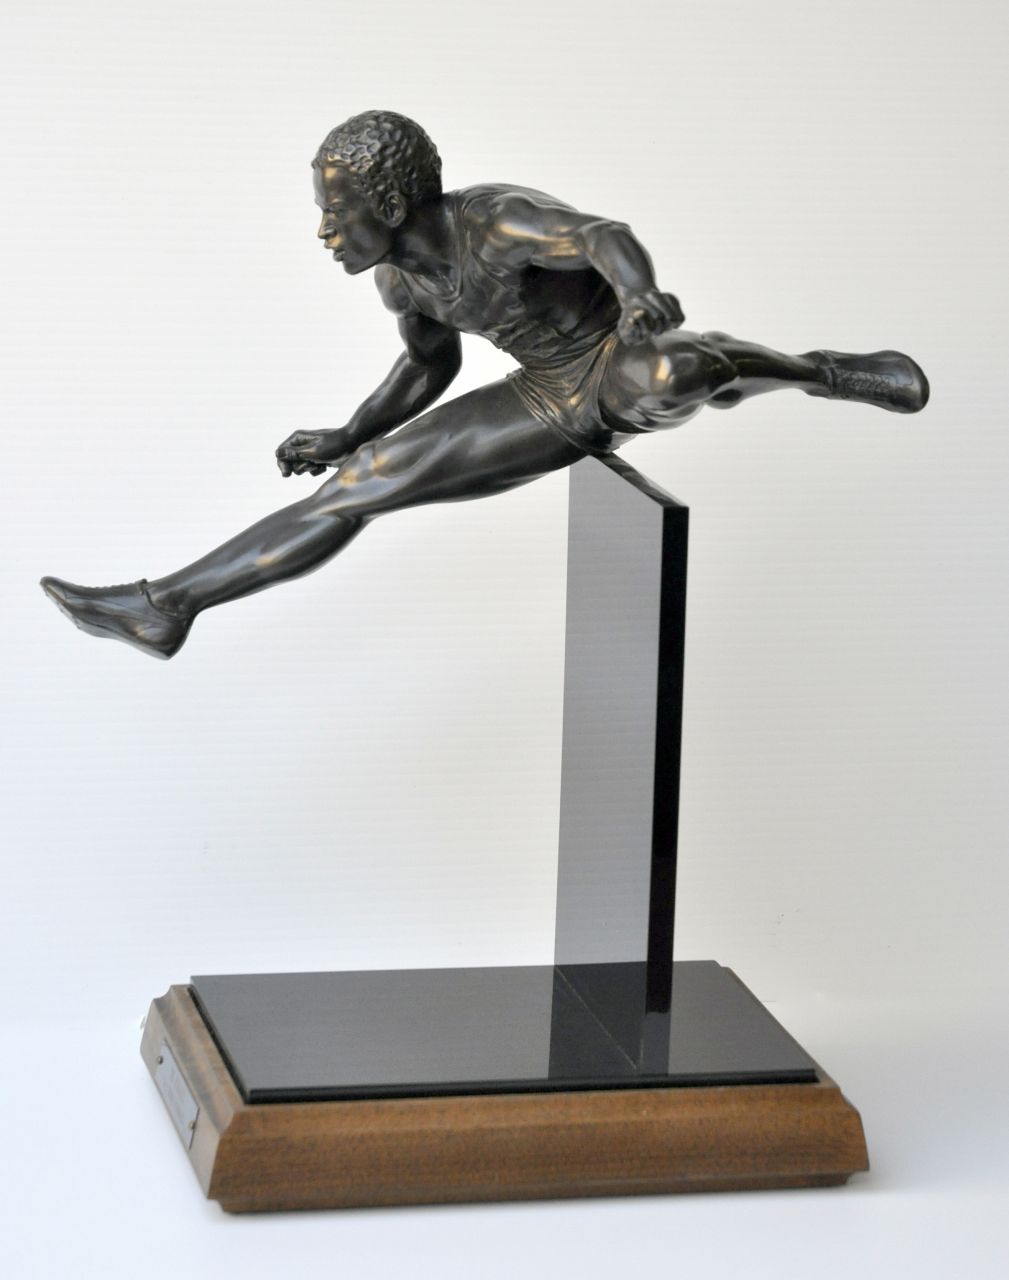 Thomas Schomberg | De hordeloper, brons en acrylaat, 46,1 x 22,0 cm, gesigneerd op linker voetzool, genummerd 8/18 en gedateerd 1984